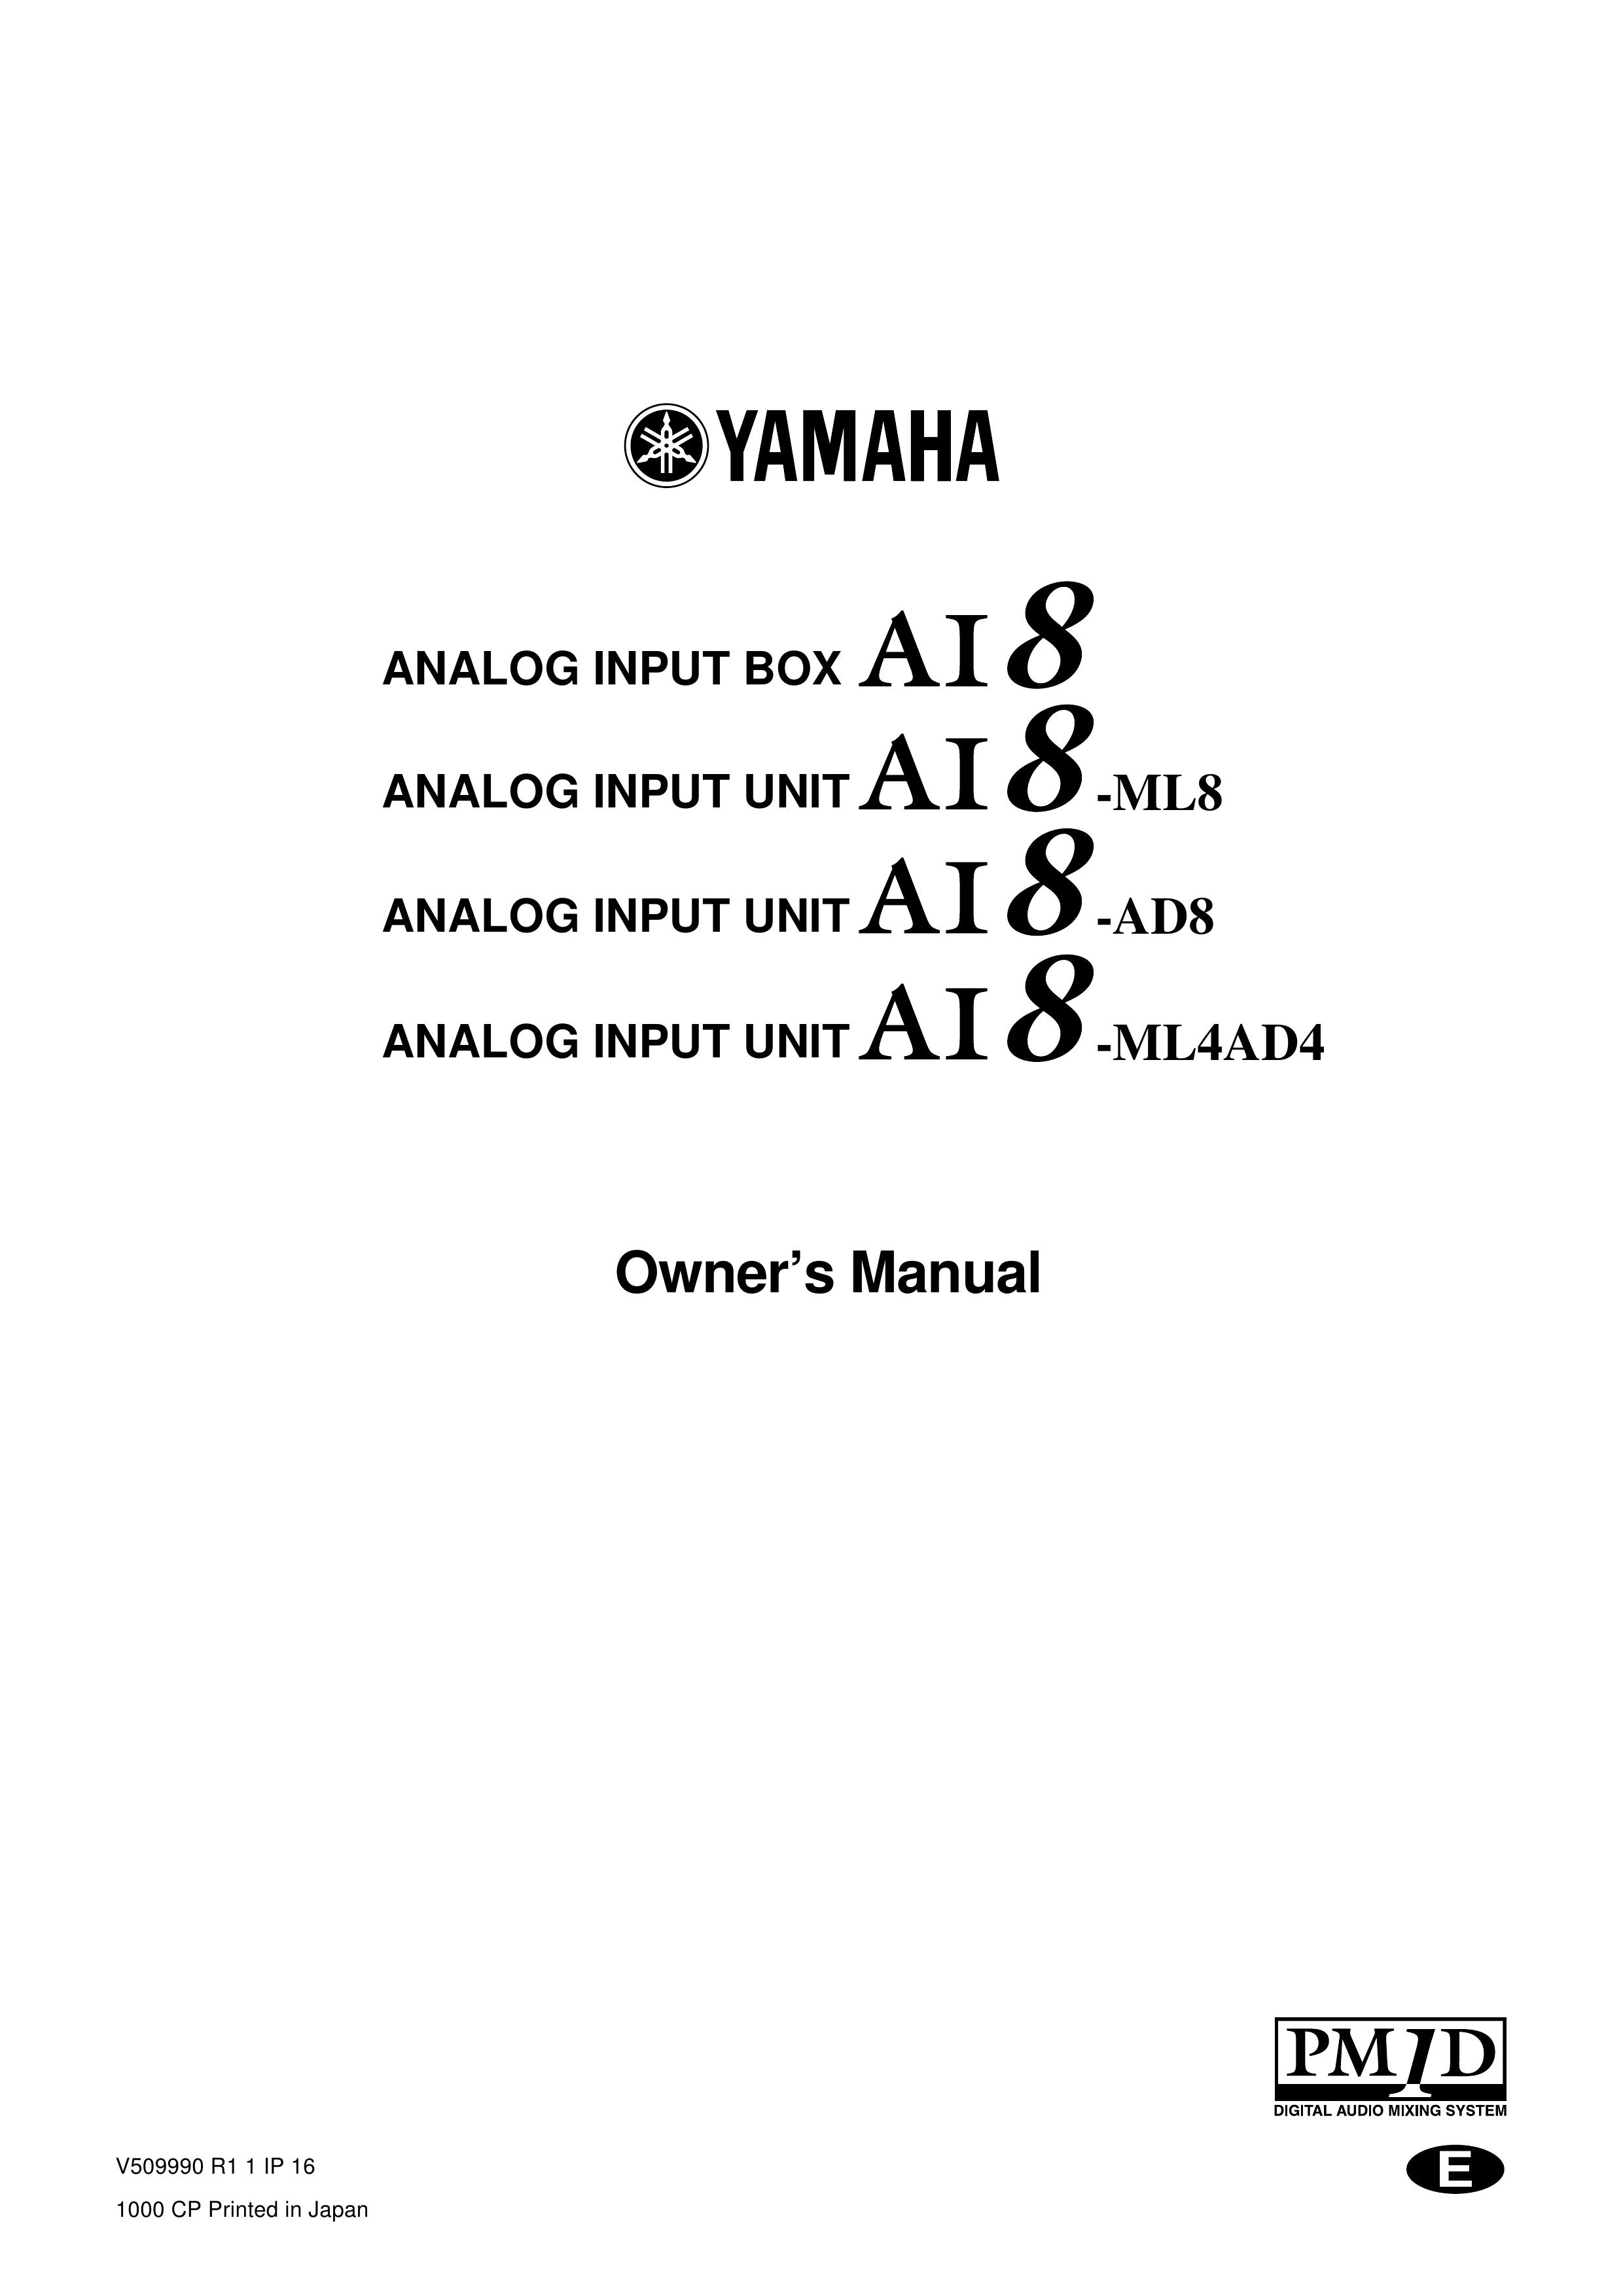 Yamaha AI8-ML8 Music Mixer User Manual